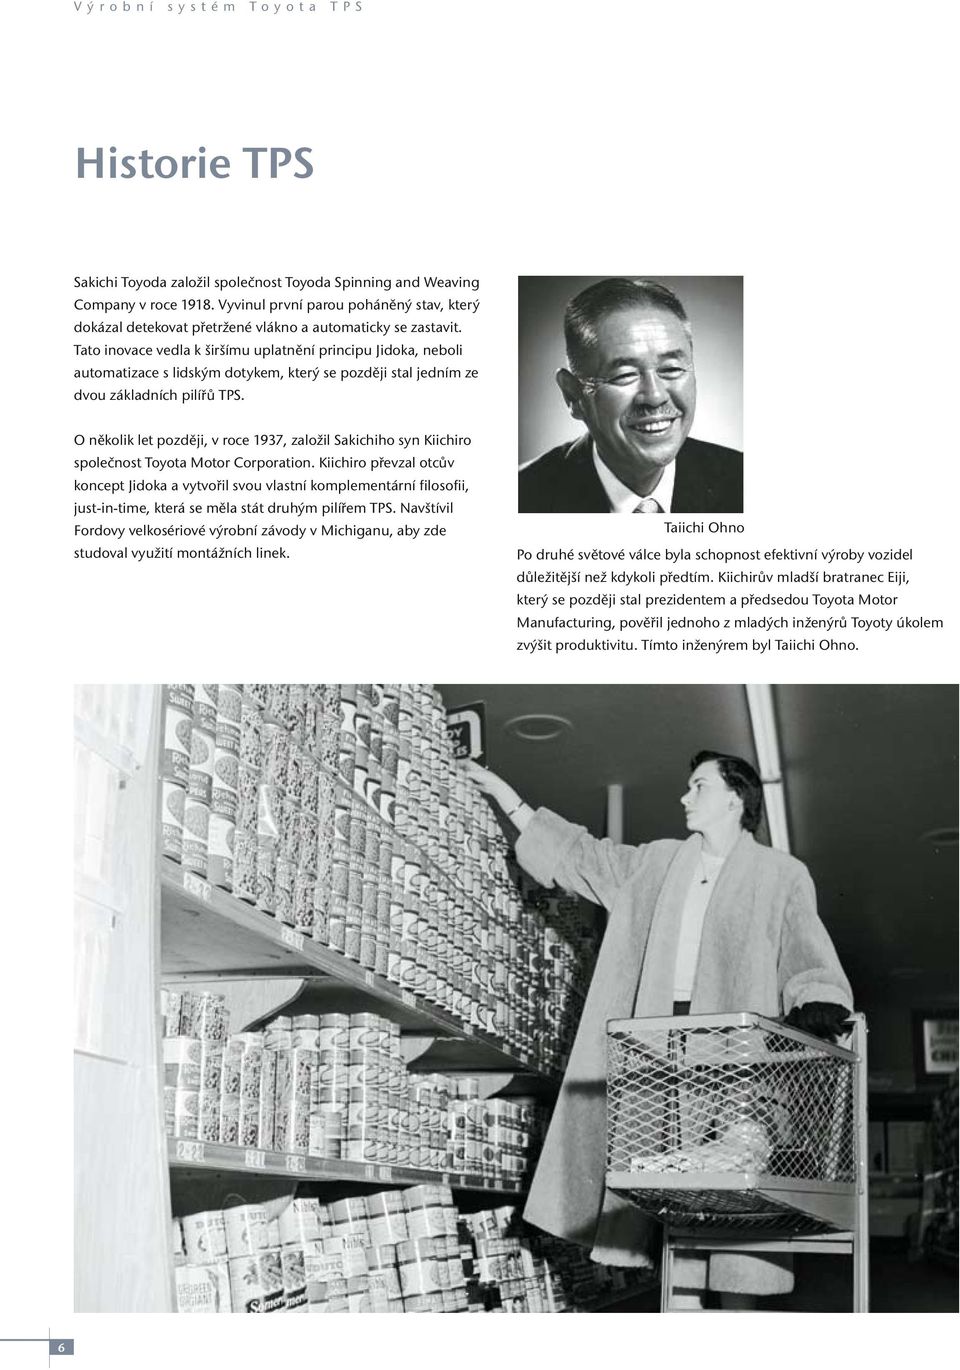 O několik let později, v roce 1937, založil Sakichiho syn Kiichiro společnost Toyota Motor Corporation.